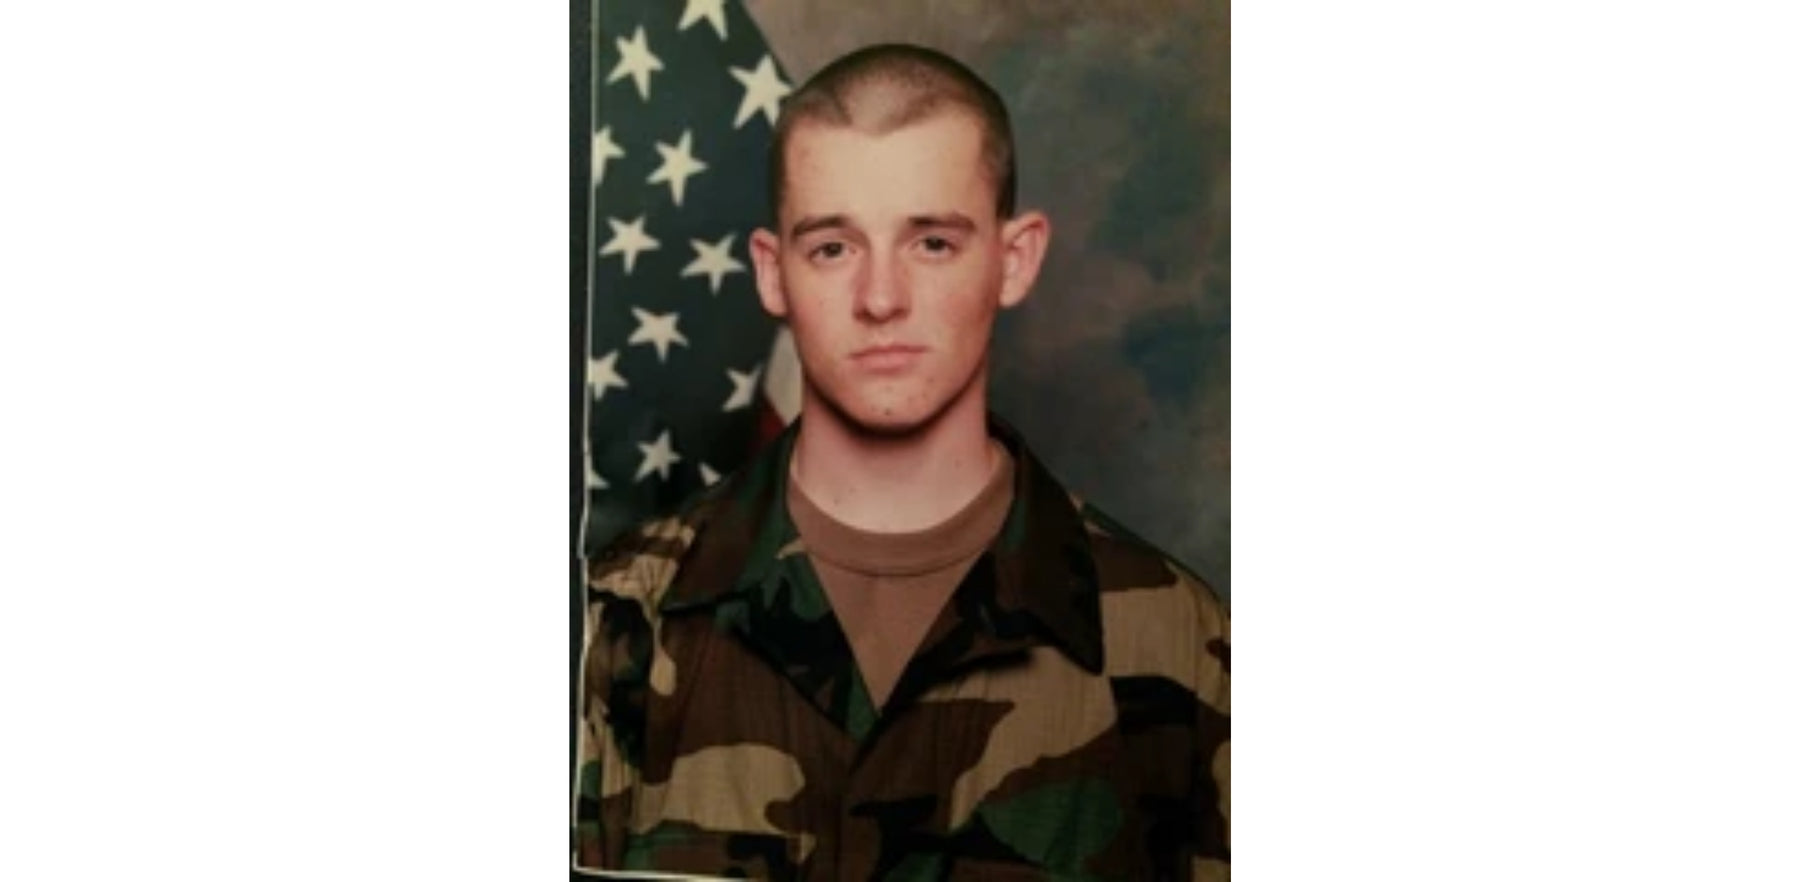 Profile: Major Bryan P.